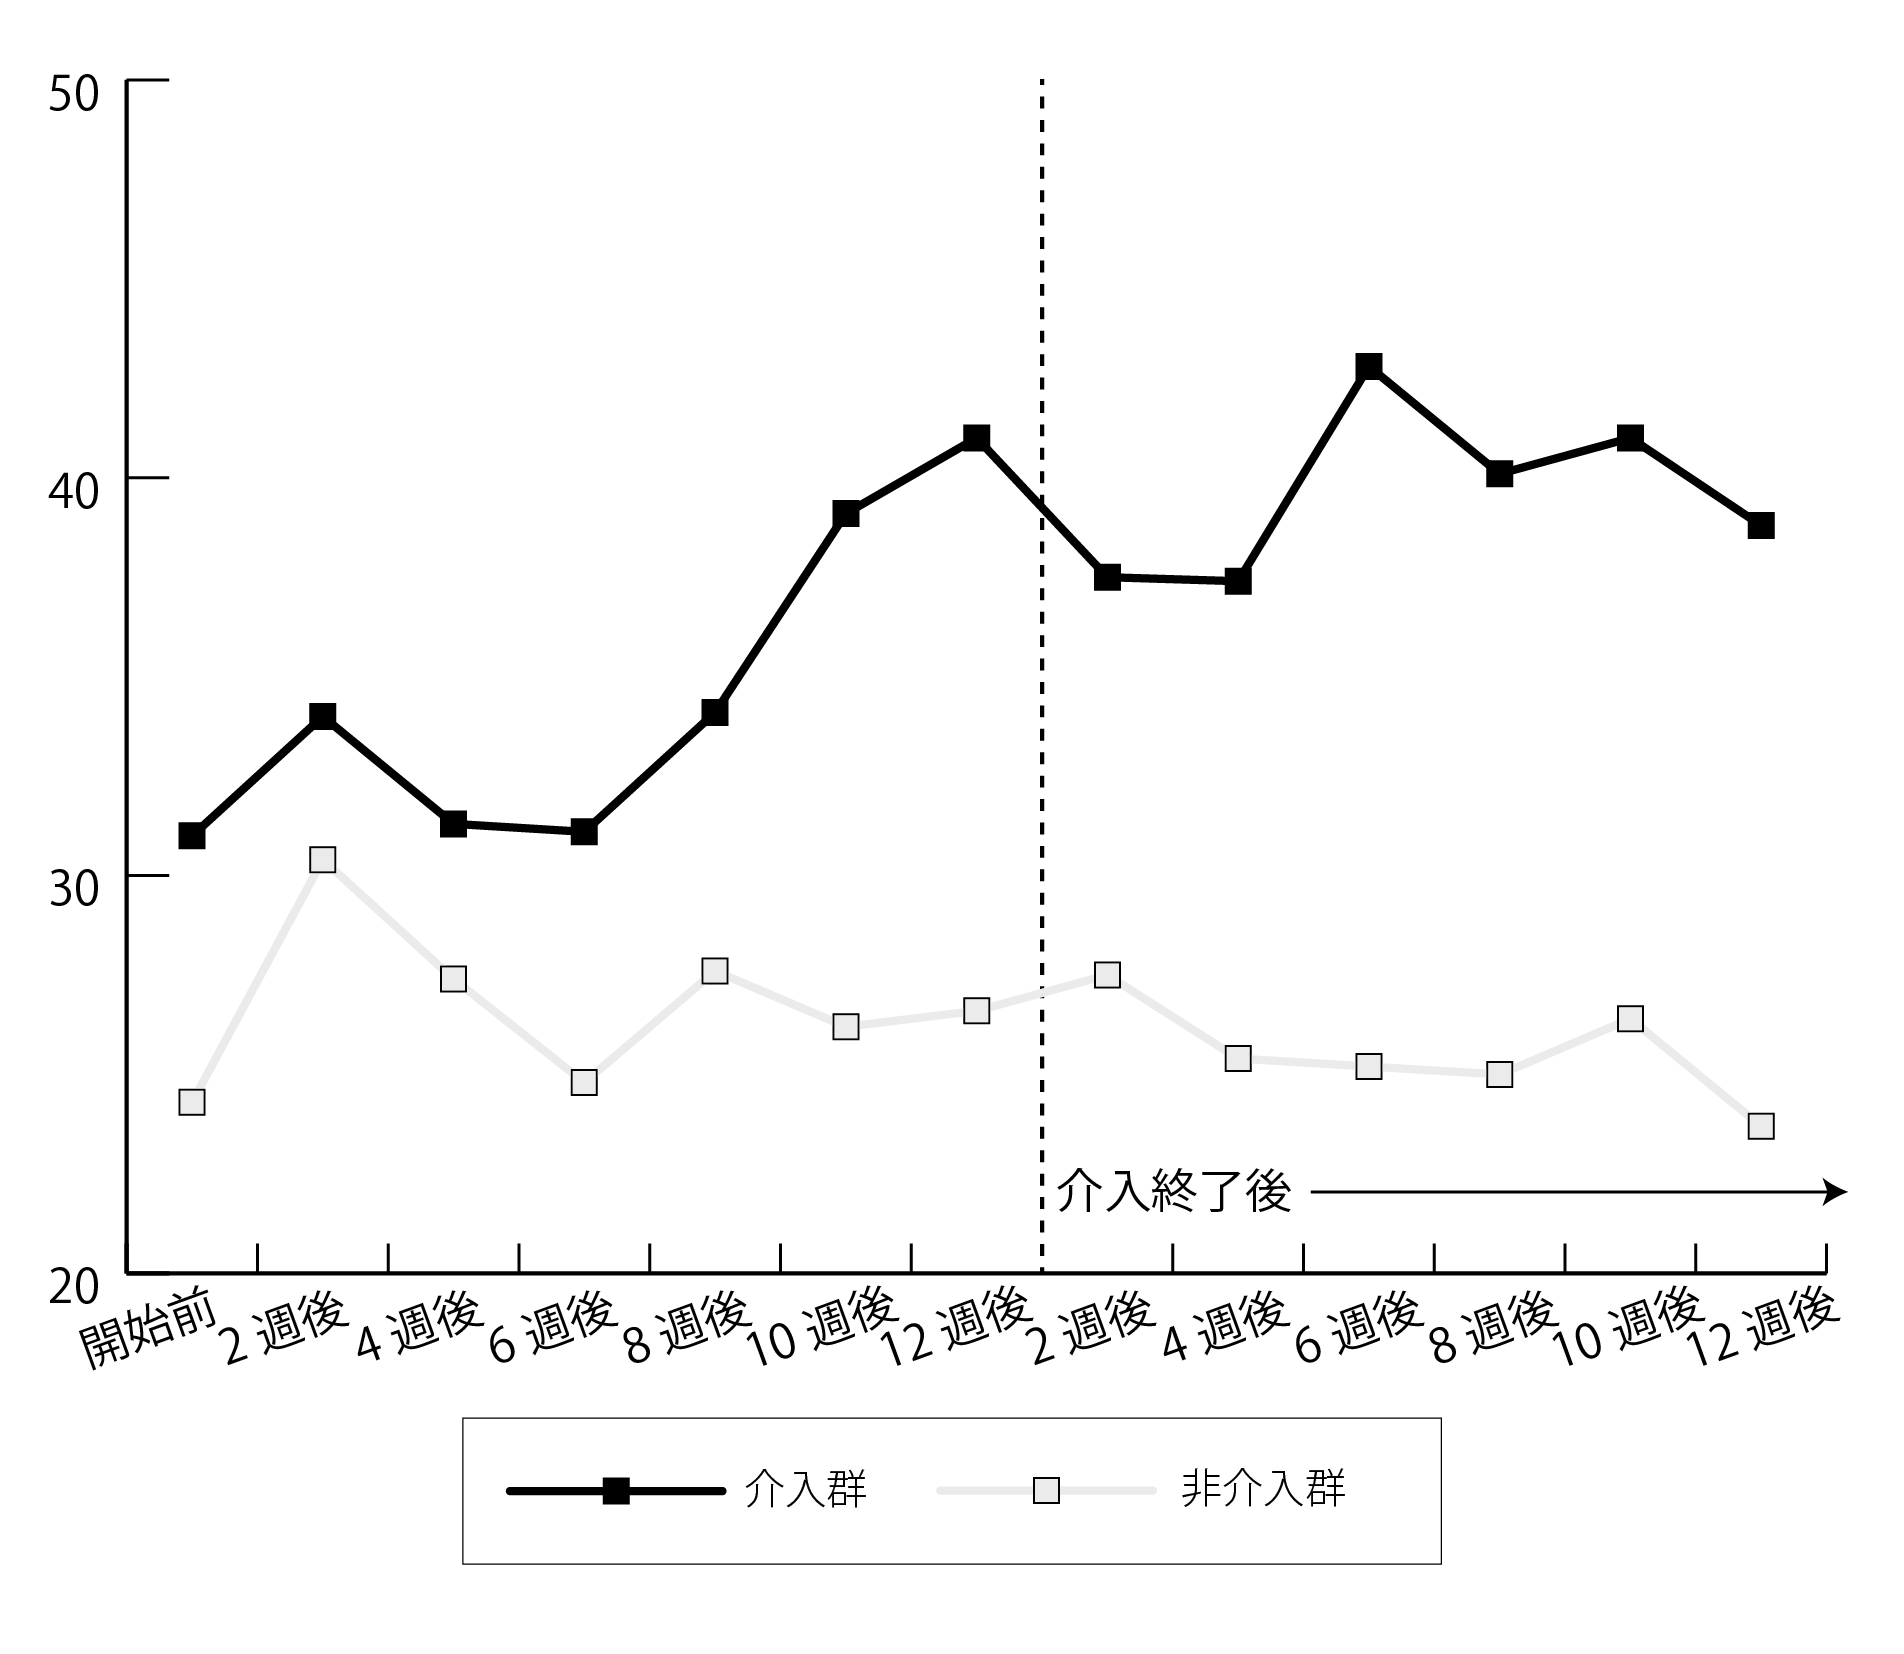 図1．「VQ; 集団体操参加への積極性や意欲」を示す指標の推移 介入から10週間後に、有意差（有意確率：P＜0.05）が出現。介入終了後も効果の維持が認められた。